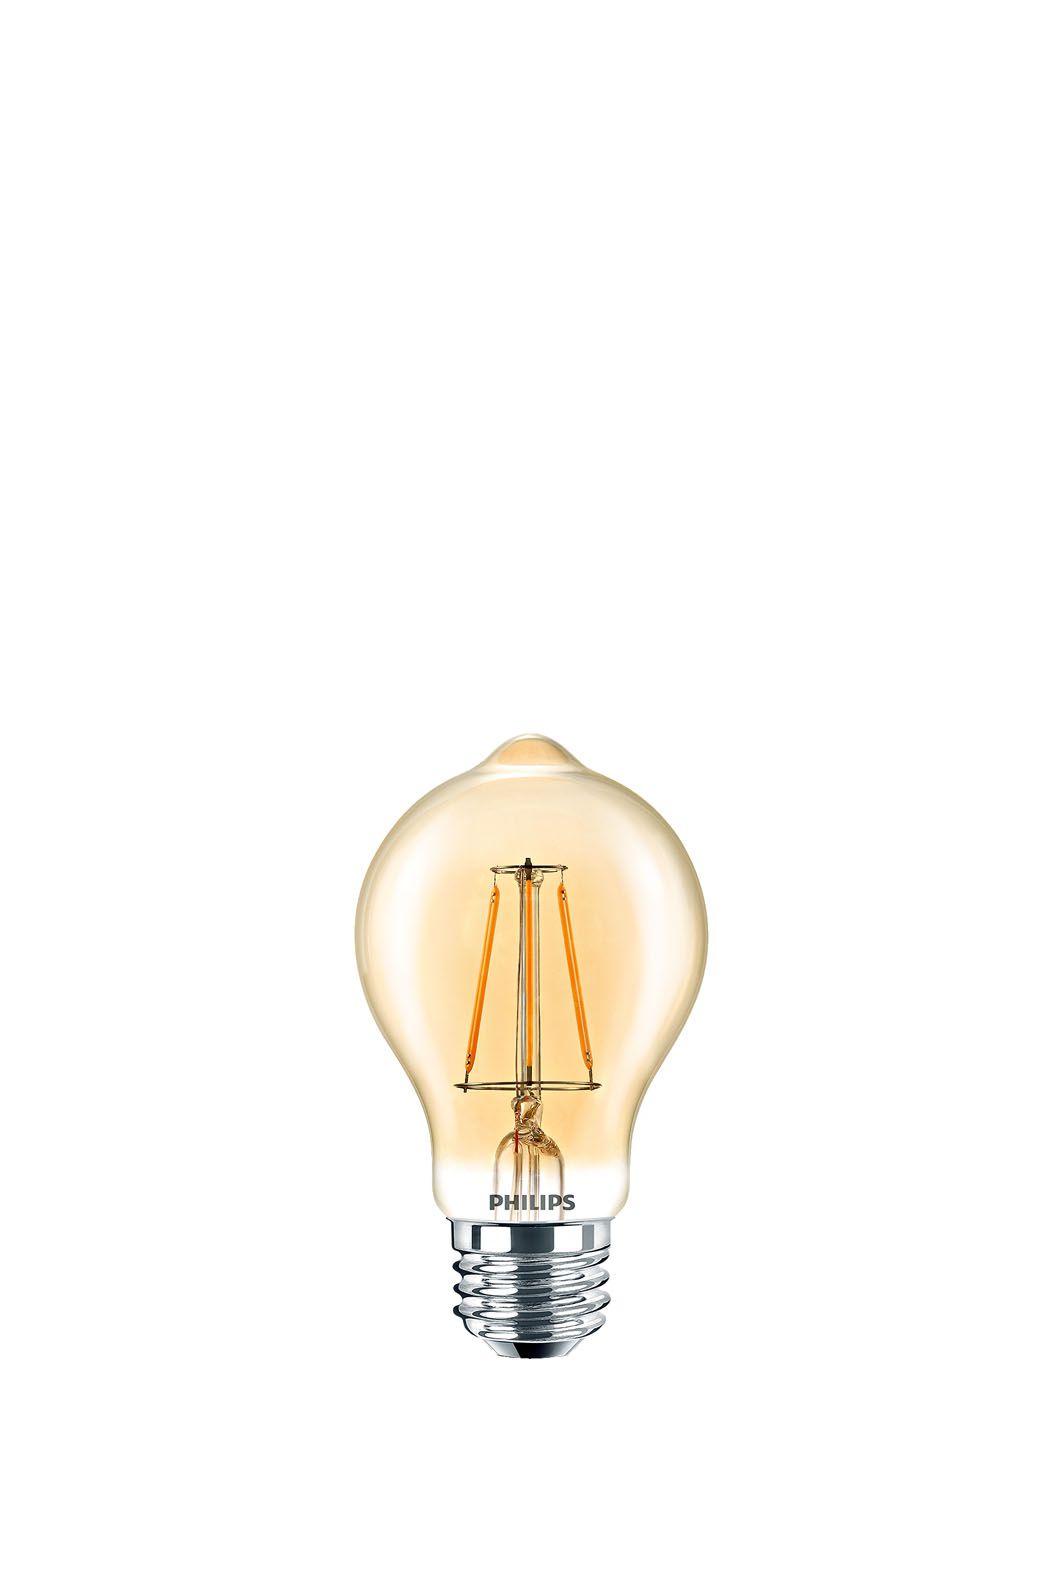 phillips LED lightbulb